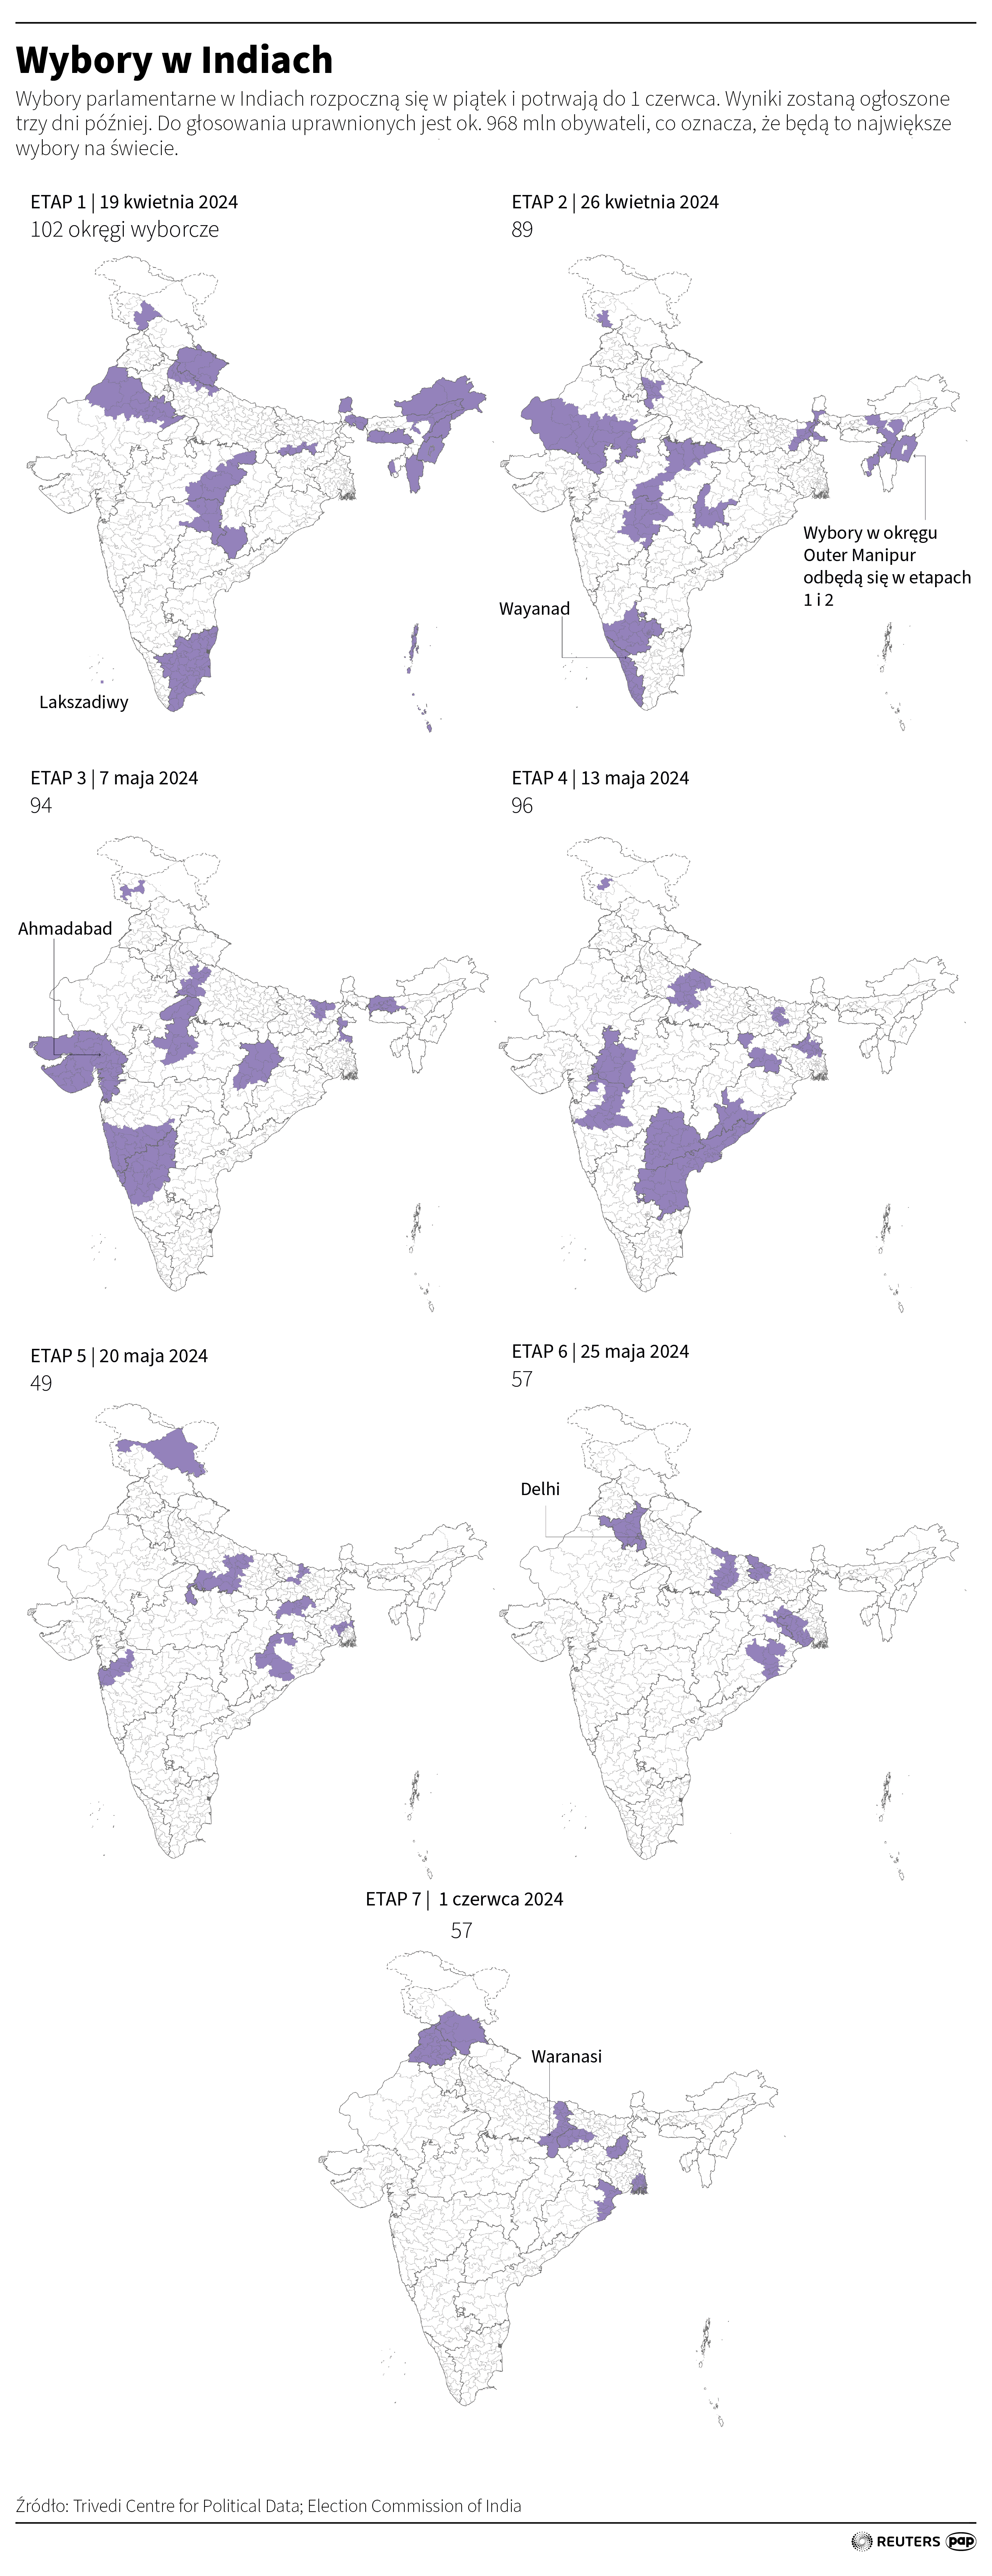 Wybory w Indiach. Infografika